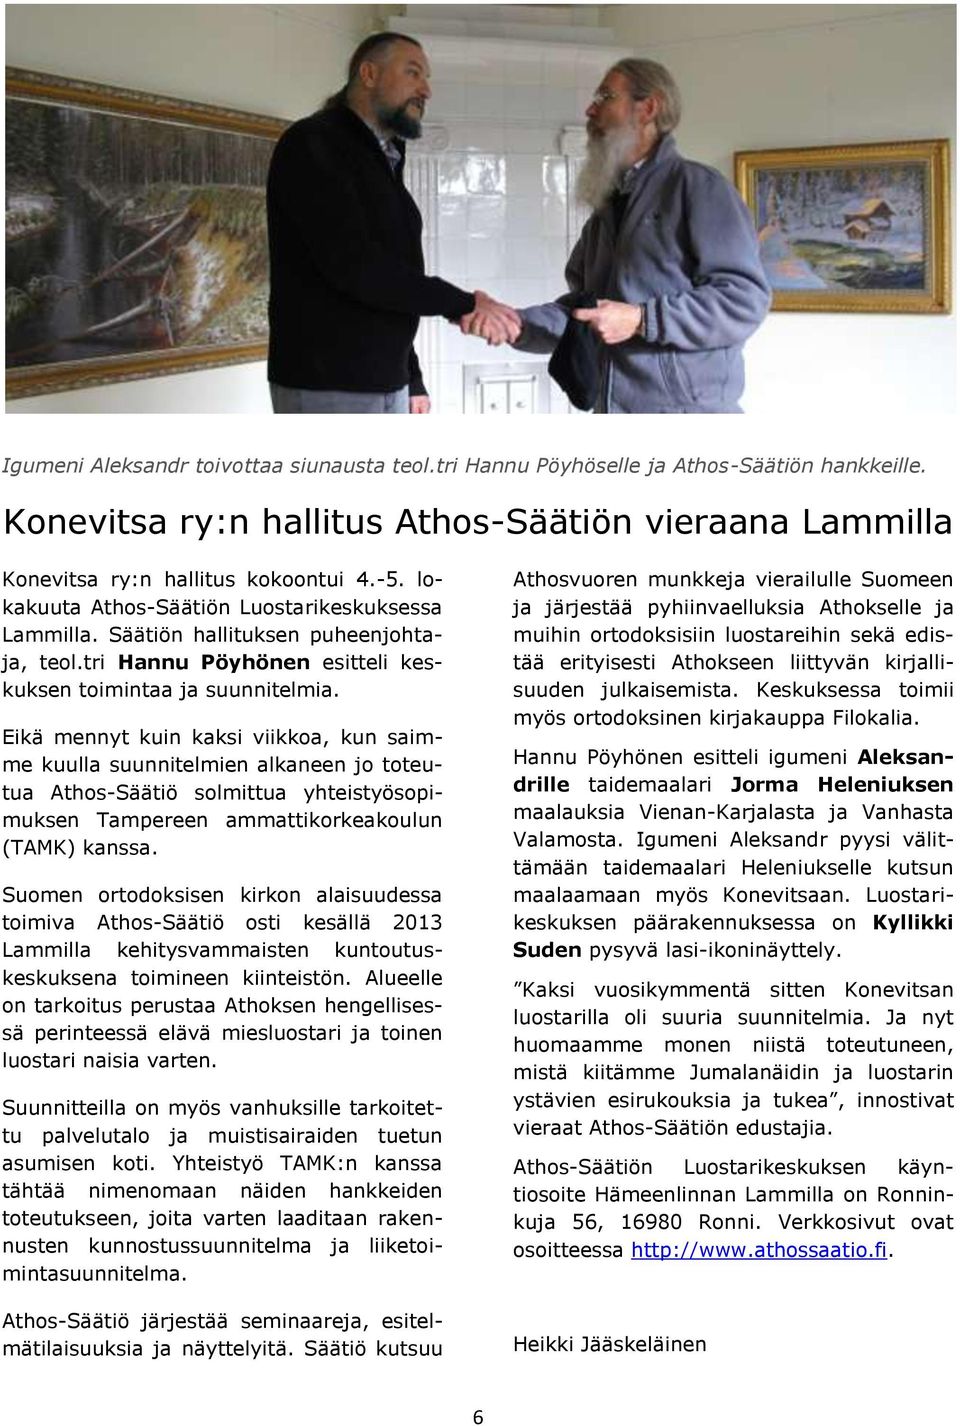 Eikä mennyt kuin kaksi viikkoa, kun saimme kuulla suunnitelmien alkaneen jo toteutua Athos-Säätiö solmittua yhteistyösopimuksen Tampereen ammattikorkeakoulun (TAMK) kanssa.